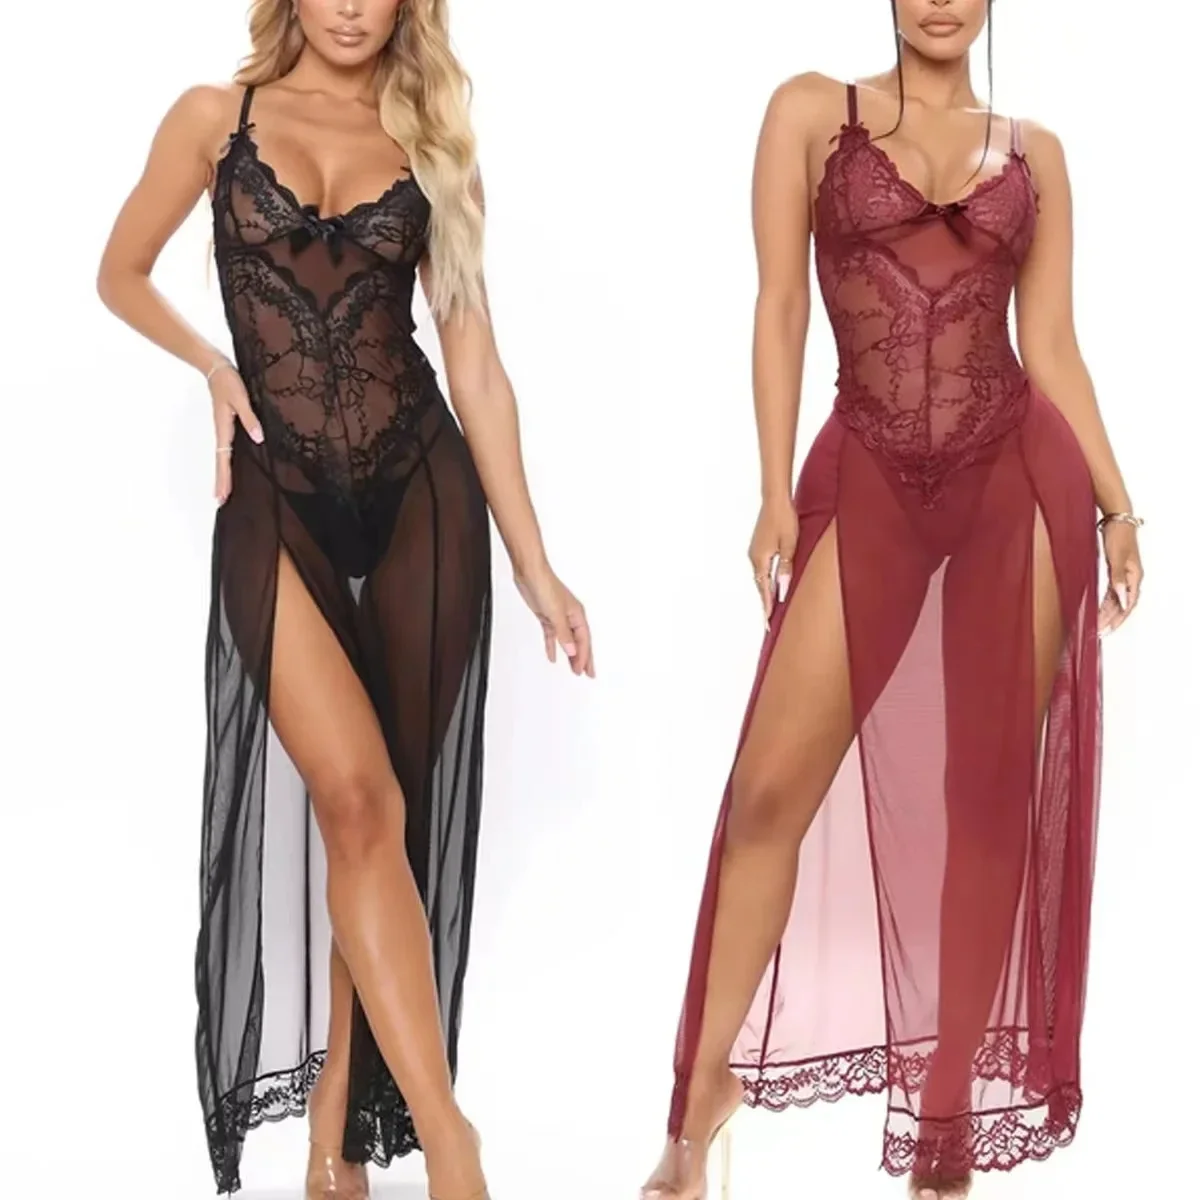 

*Plus Size Mesh Sling Nightdress Lace Emotional Lingerie Sexy Nightwear Female Temptation Nighties for Women Sleeping Dress S-5X